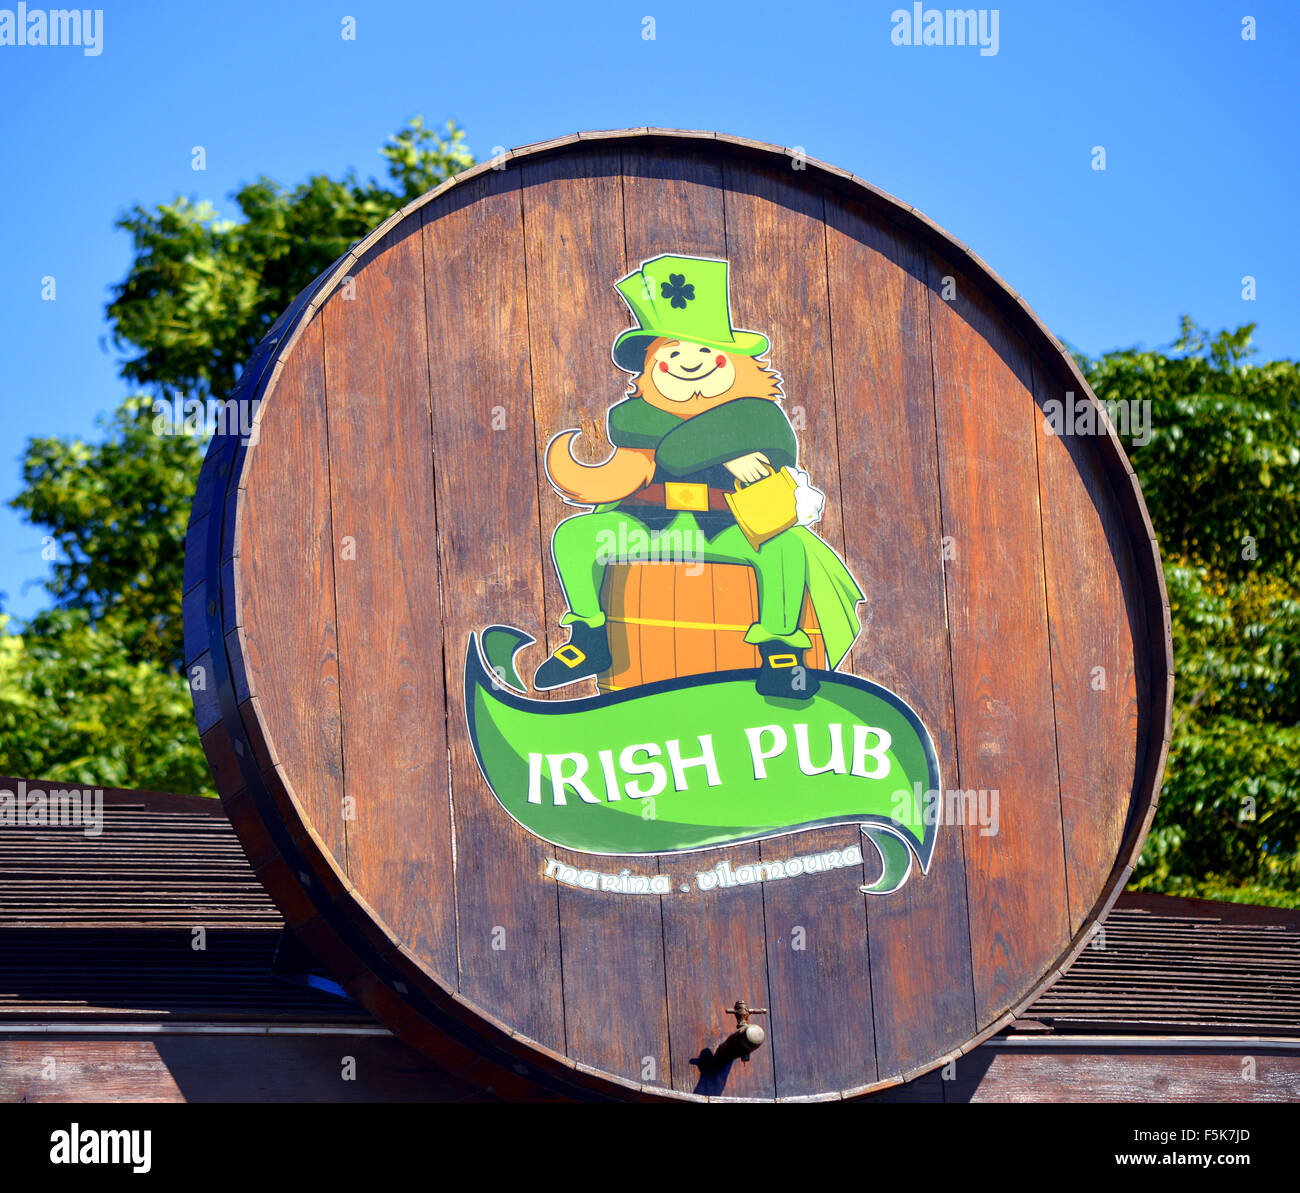 Irish pub sign Stock Photo